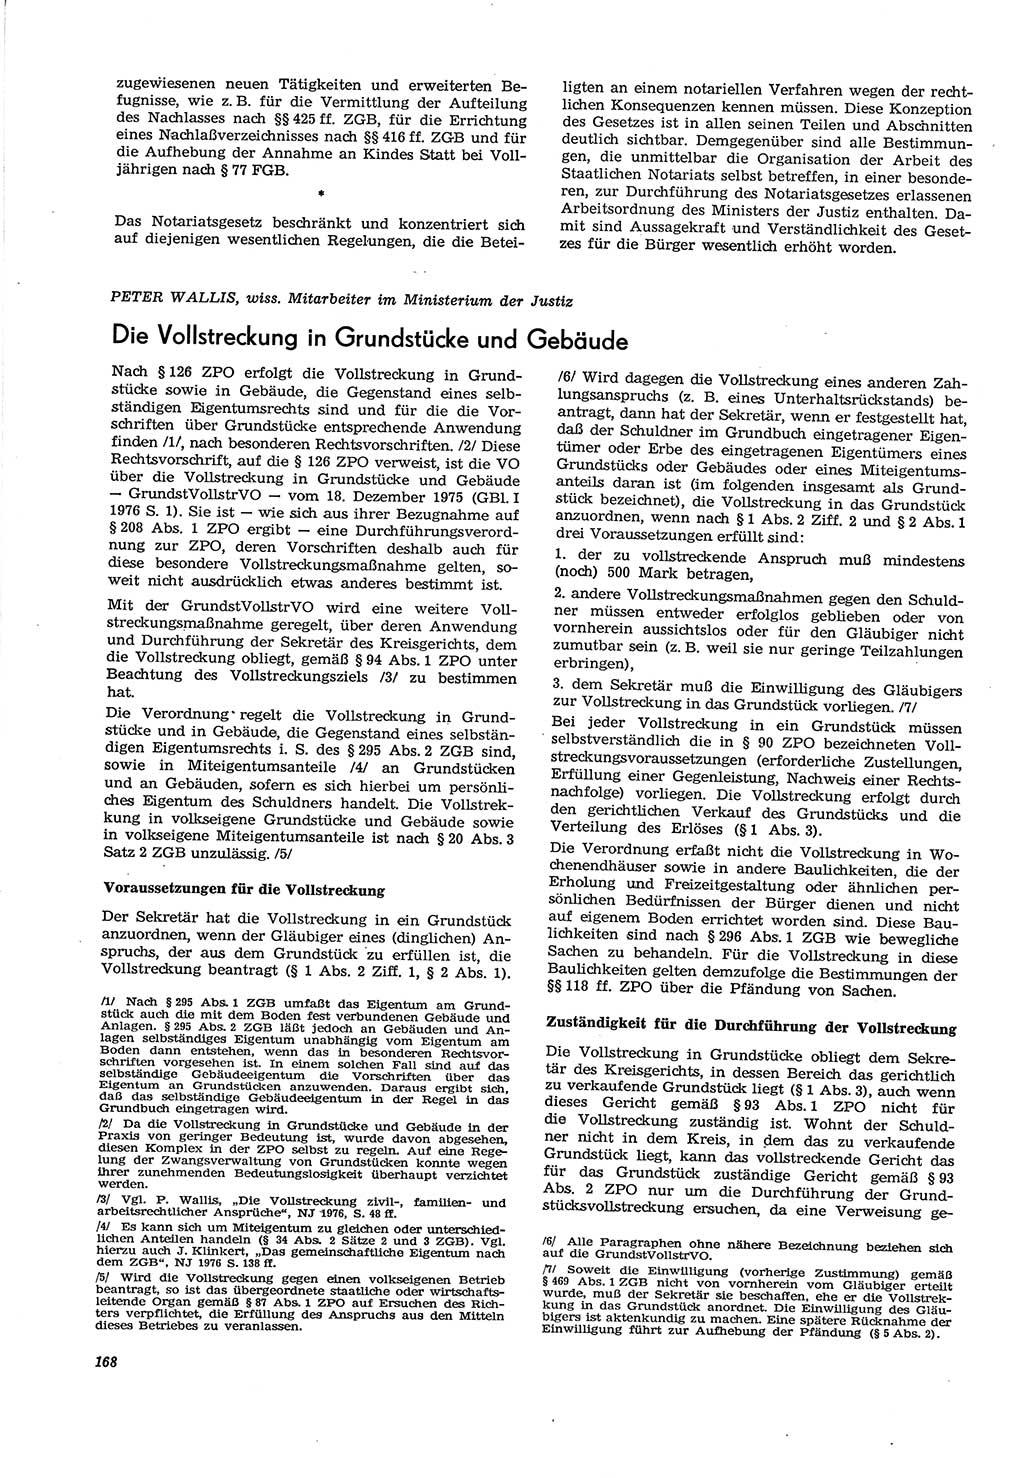 Neue Justiz (NJ), Zeitschrift für Recht und Rechtswissenschaft [Deutsche Demokratische Republik (DDR)], 30. Jahrgang 1976, Seite 168 (NJ DDR 1976, S. 168)